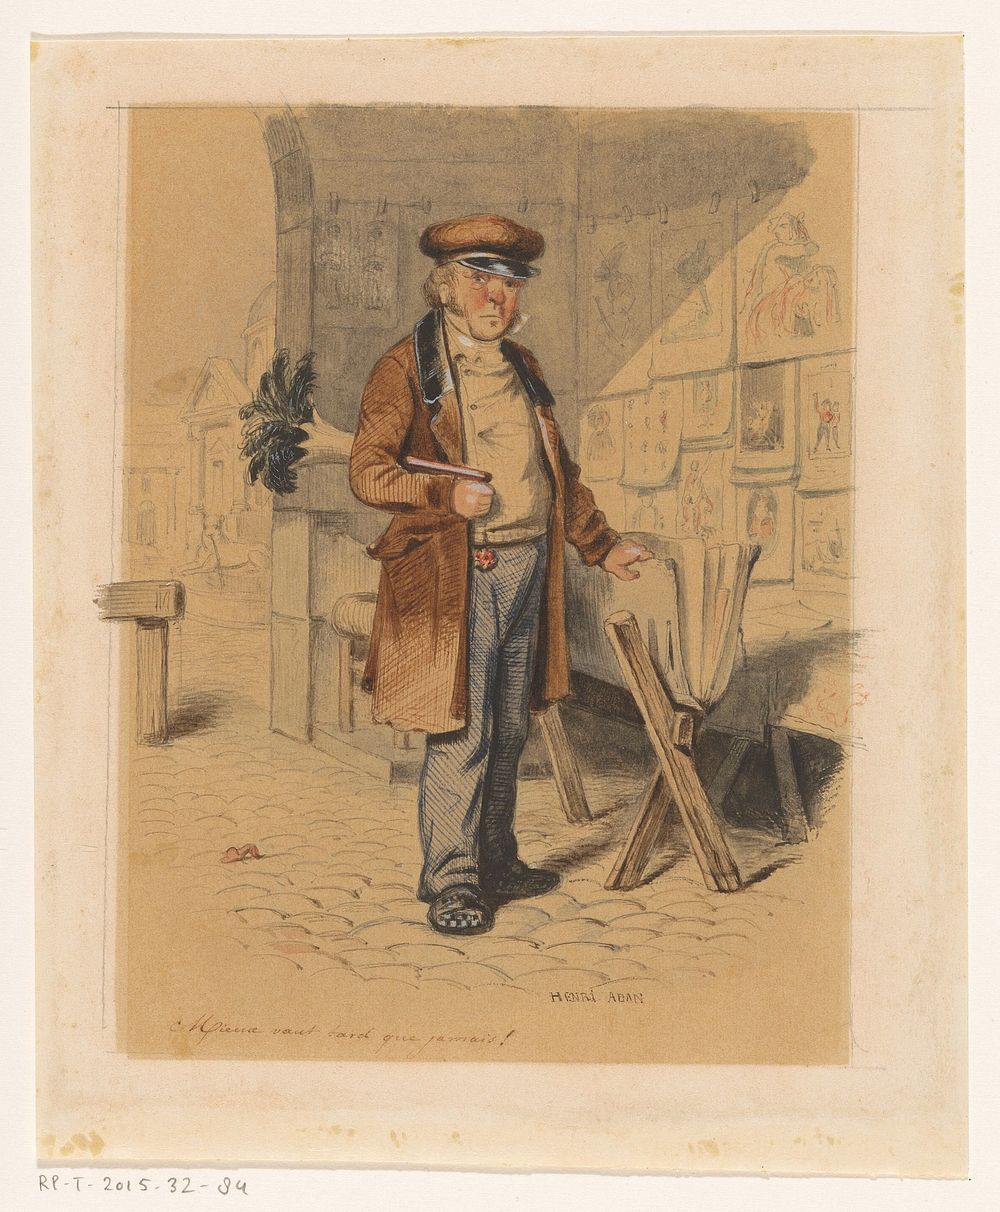 Prenthandelaar (c. 1850 - c. 1900) by Henri Adan and Karl Girardet